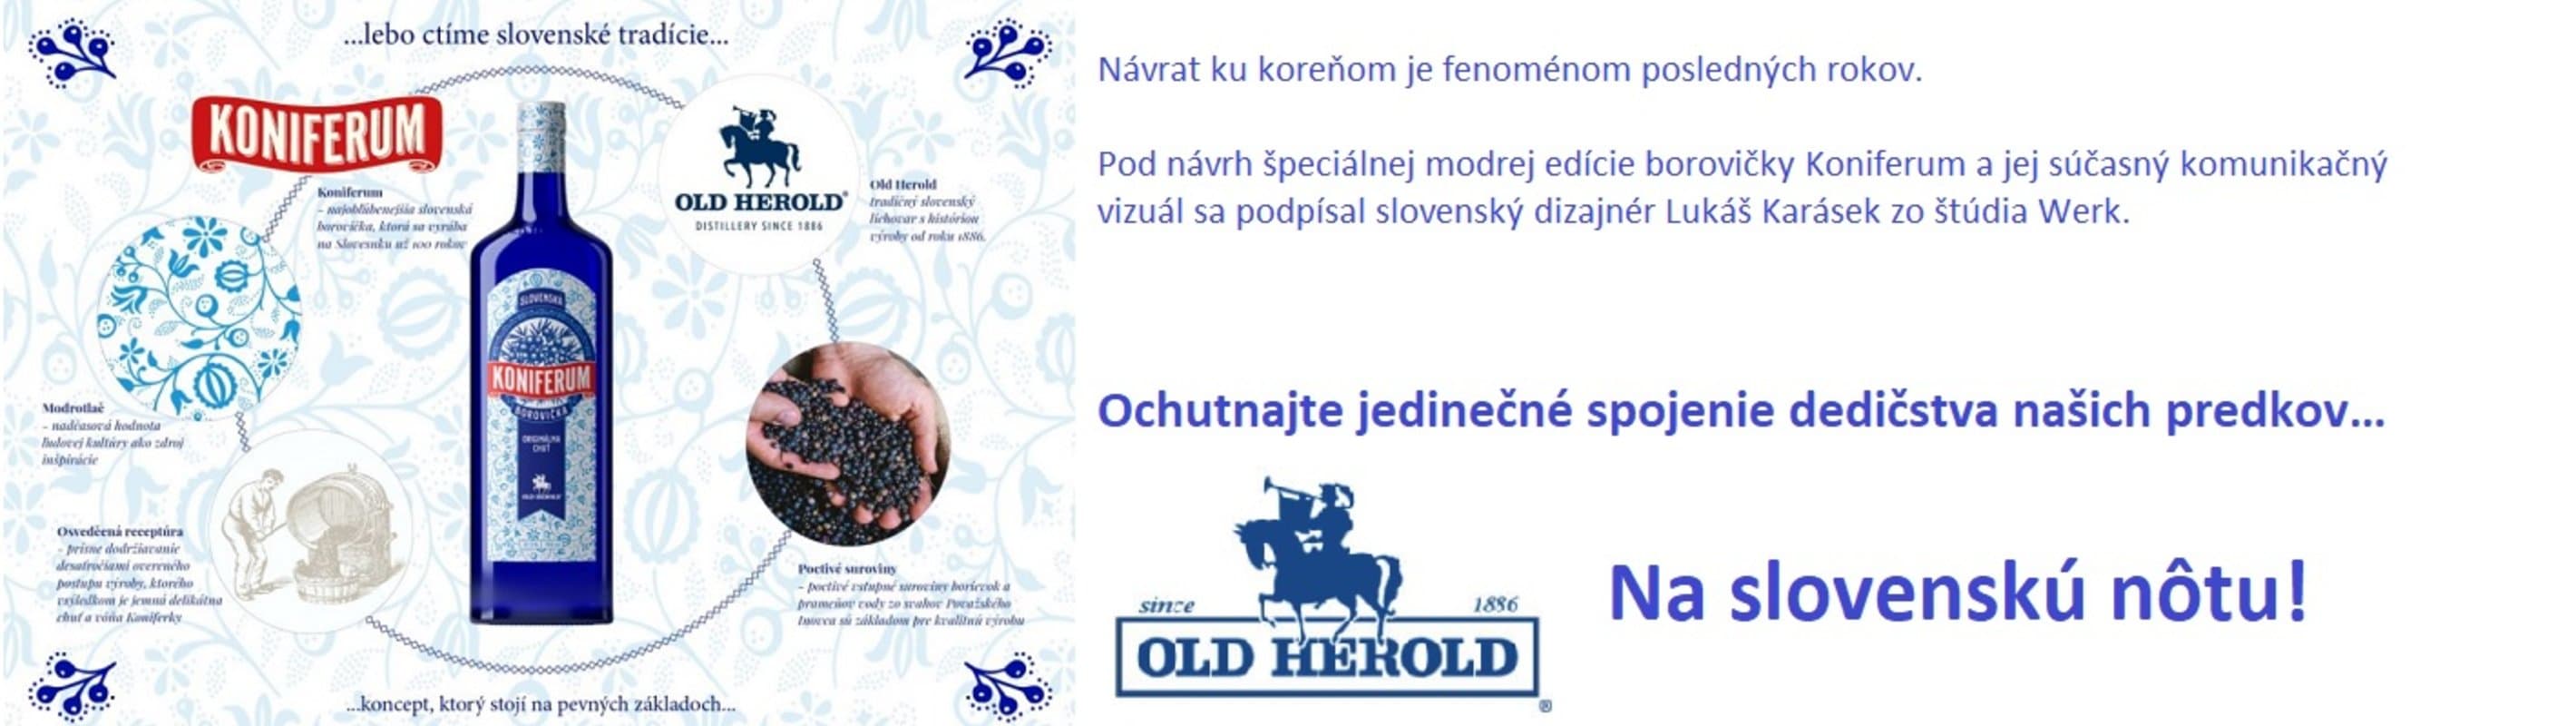 Old Herold Modrá koniferum